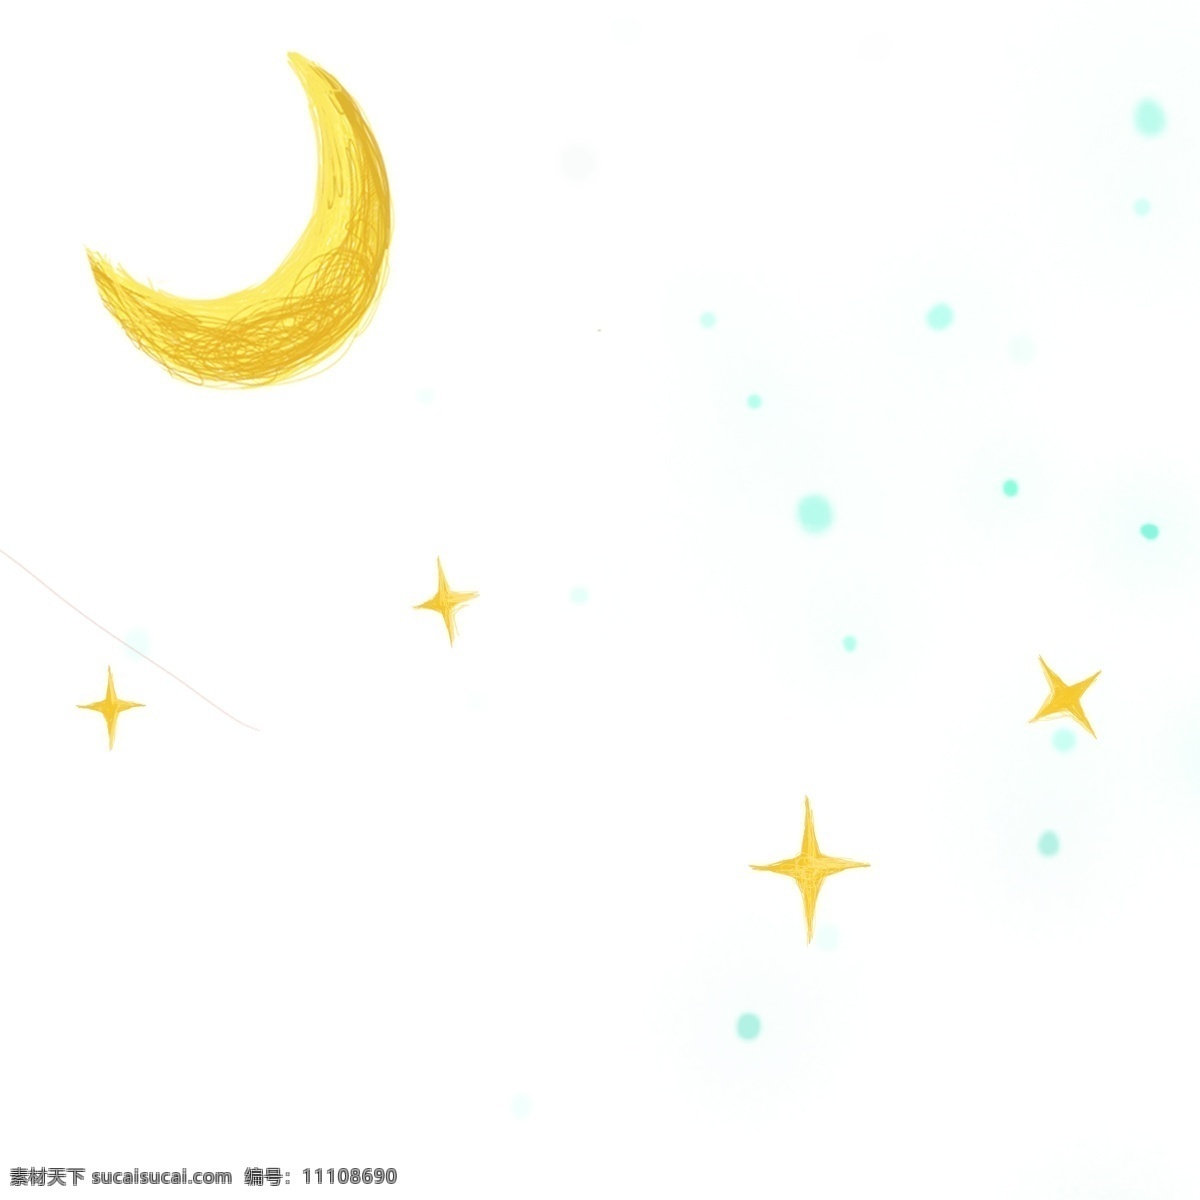 卡通 可爱 月亮 星星 太阳 矢量 卡通星星 卡通月亮 可爱太阳 可爱星星 可爱月亮 银河系 黄色的